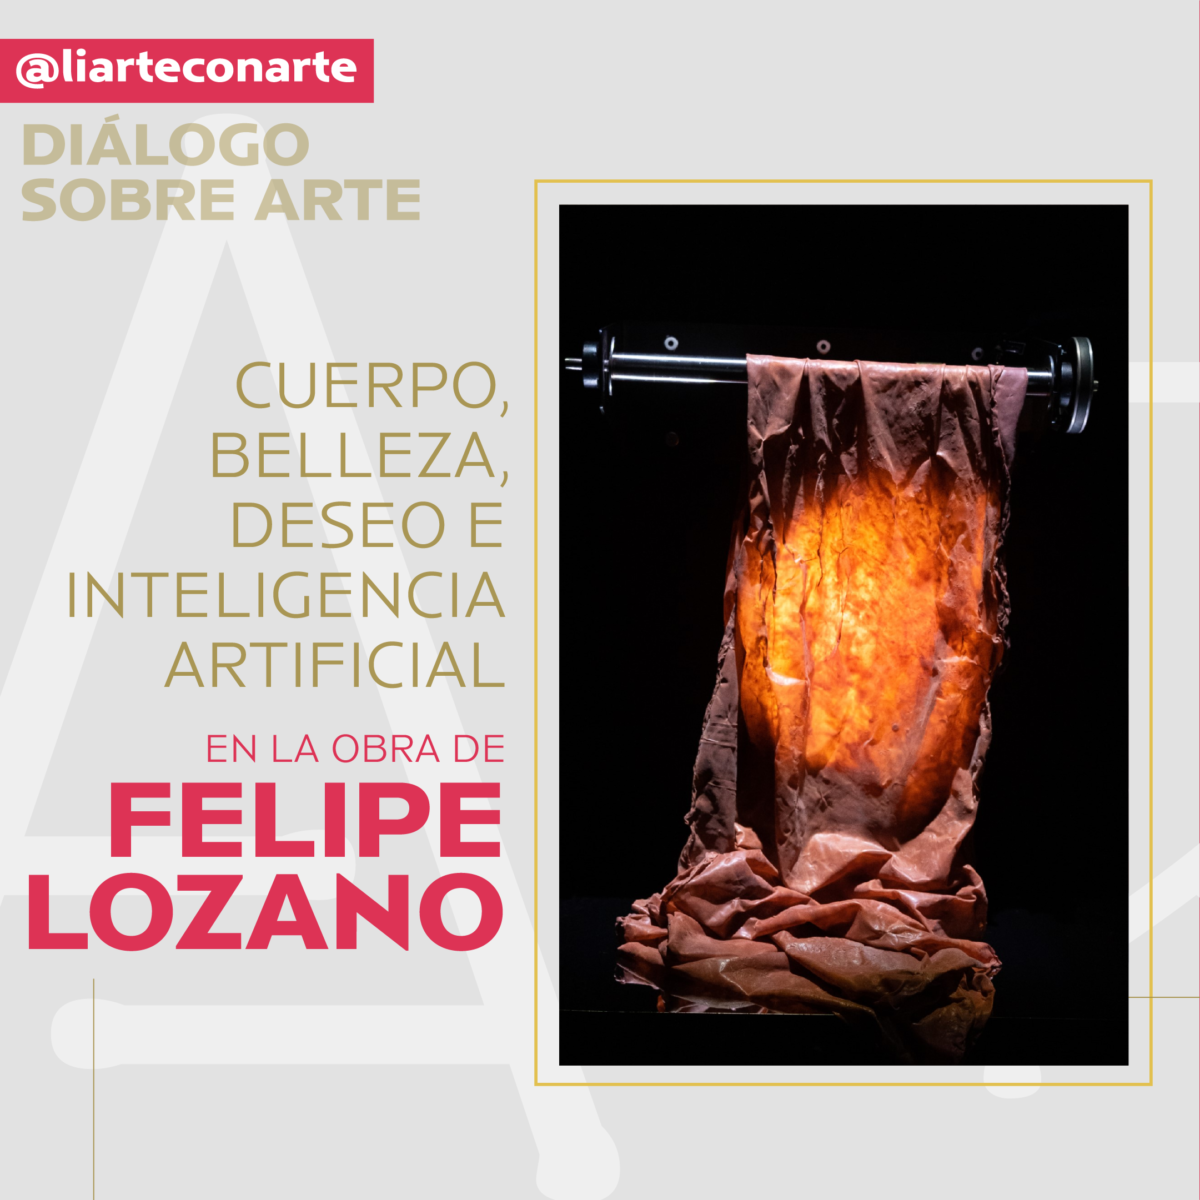 Cuerpo, belleza, deseo e inteligencia artificial en la obra de Felipe Lozano